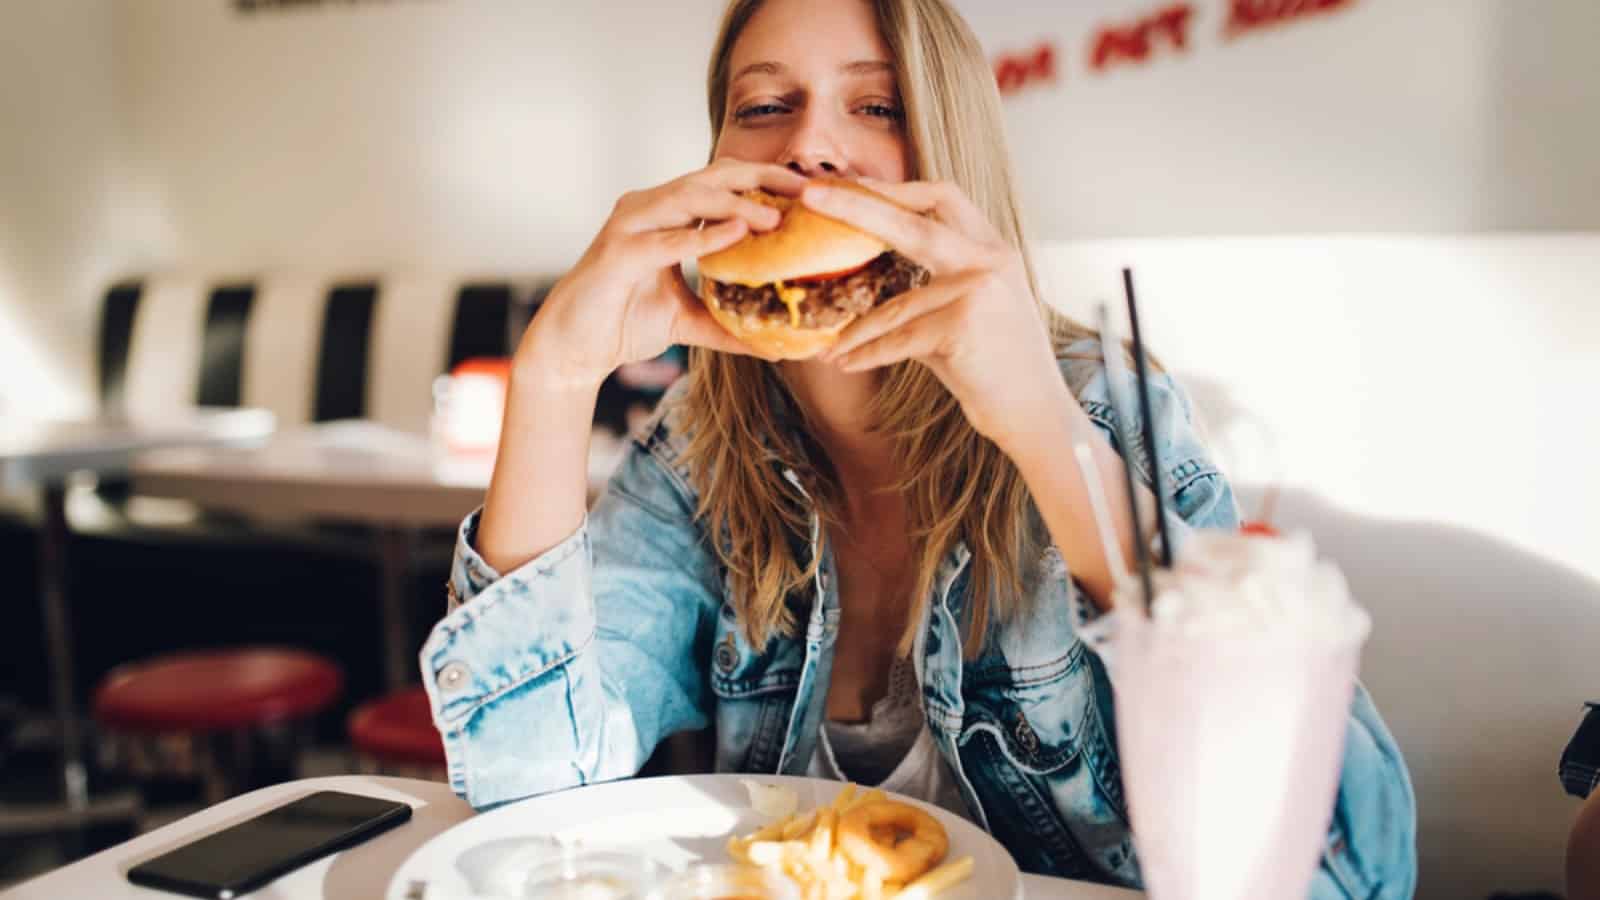 Woman eating cheese burger